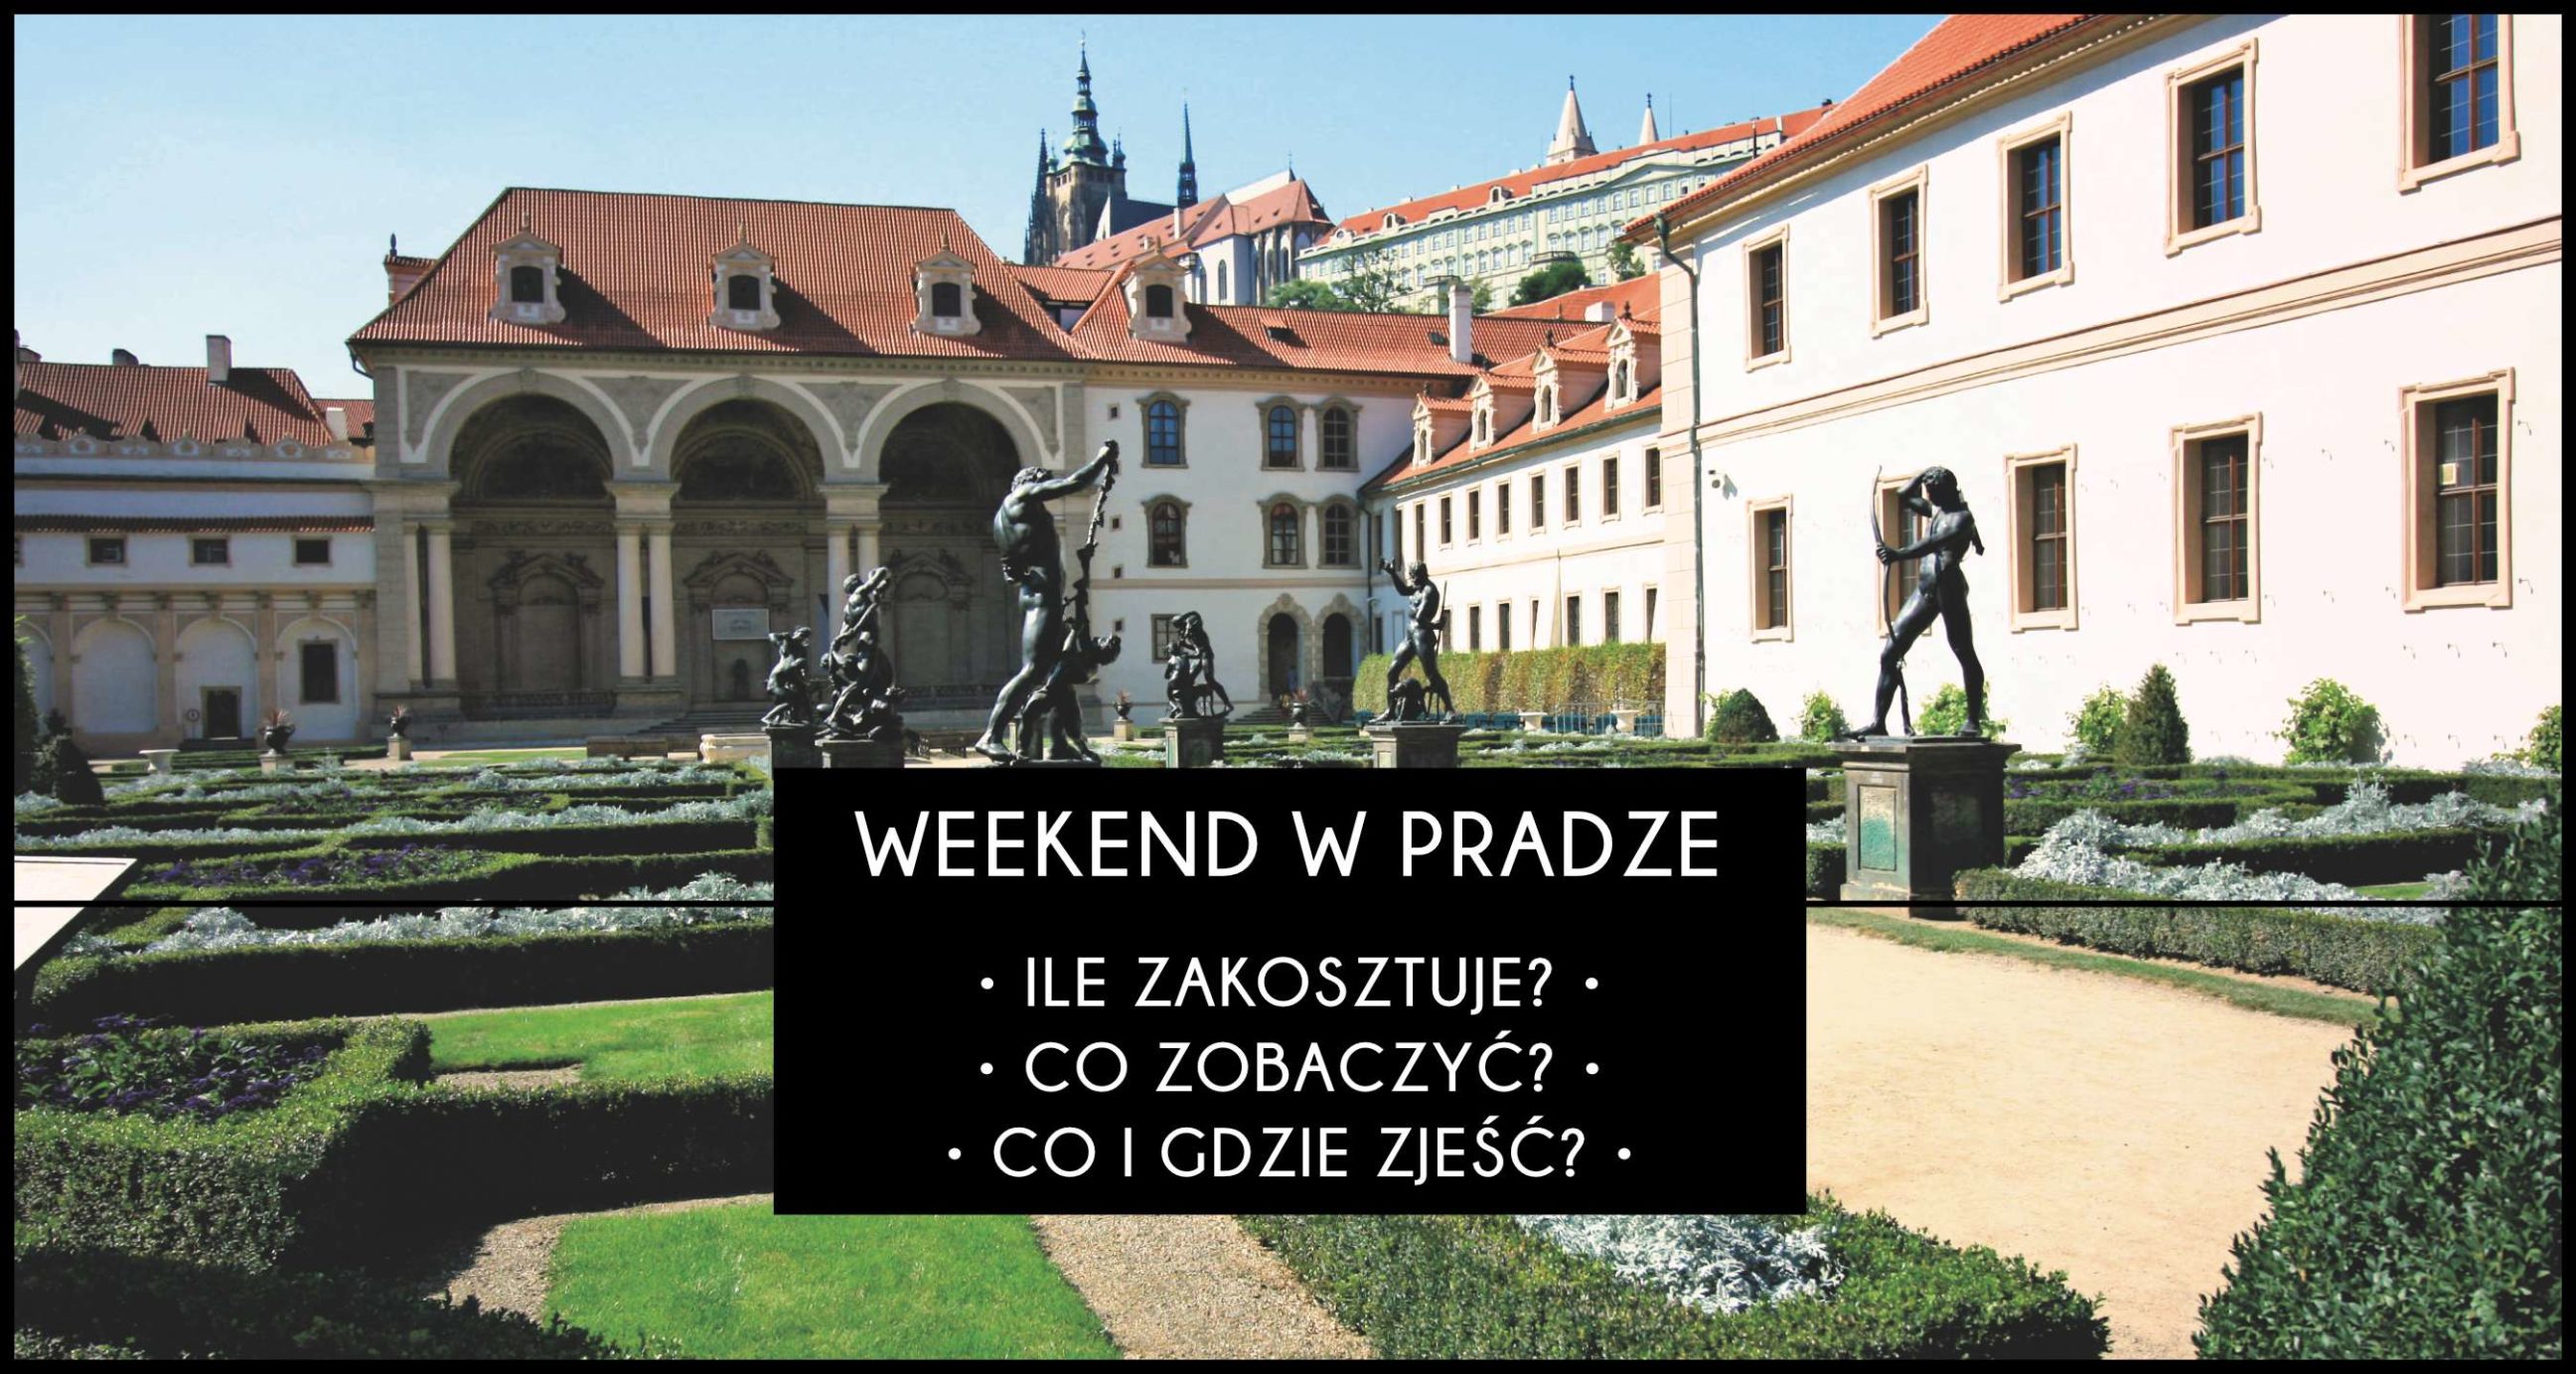 weekend-w-pradze-koszty-co-zobaczy-co-zje-architrav-pl